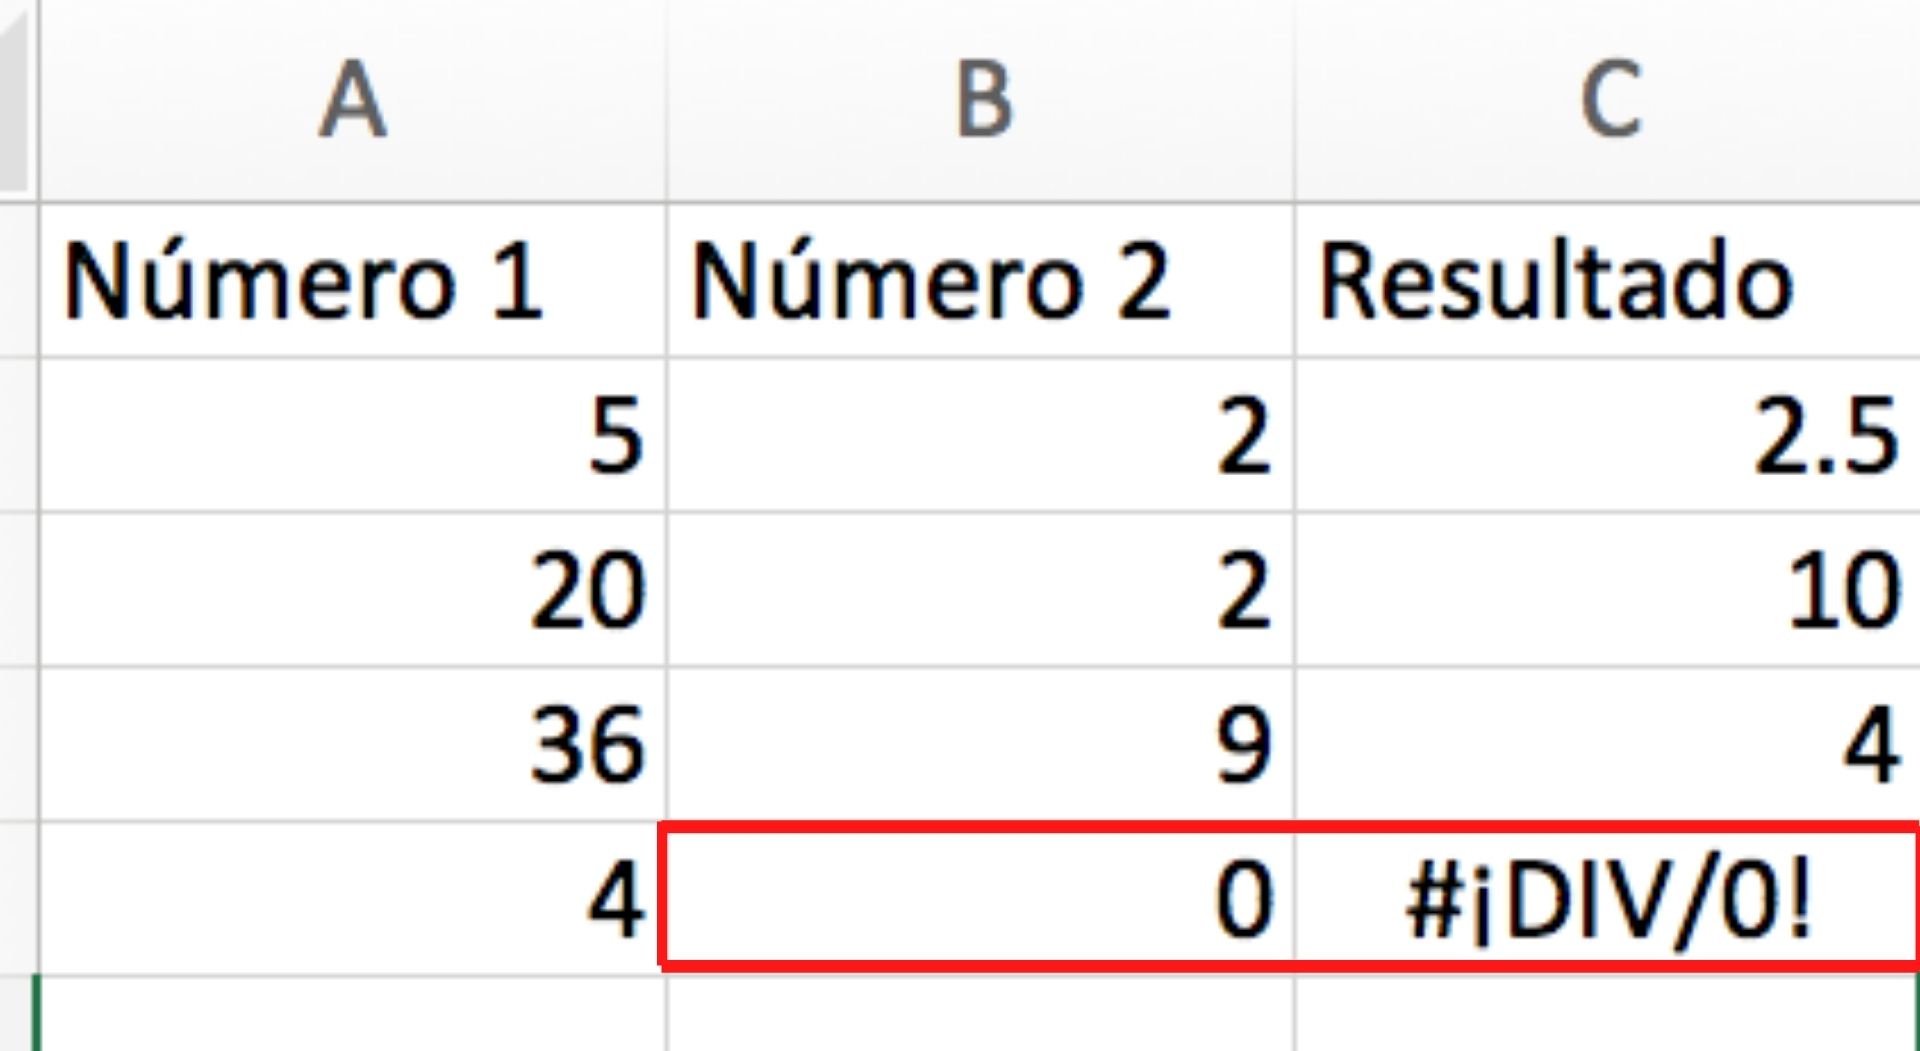 Ejemplo de error #¡DIV/0! en Excel